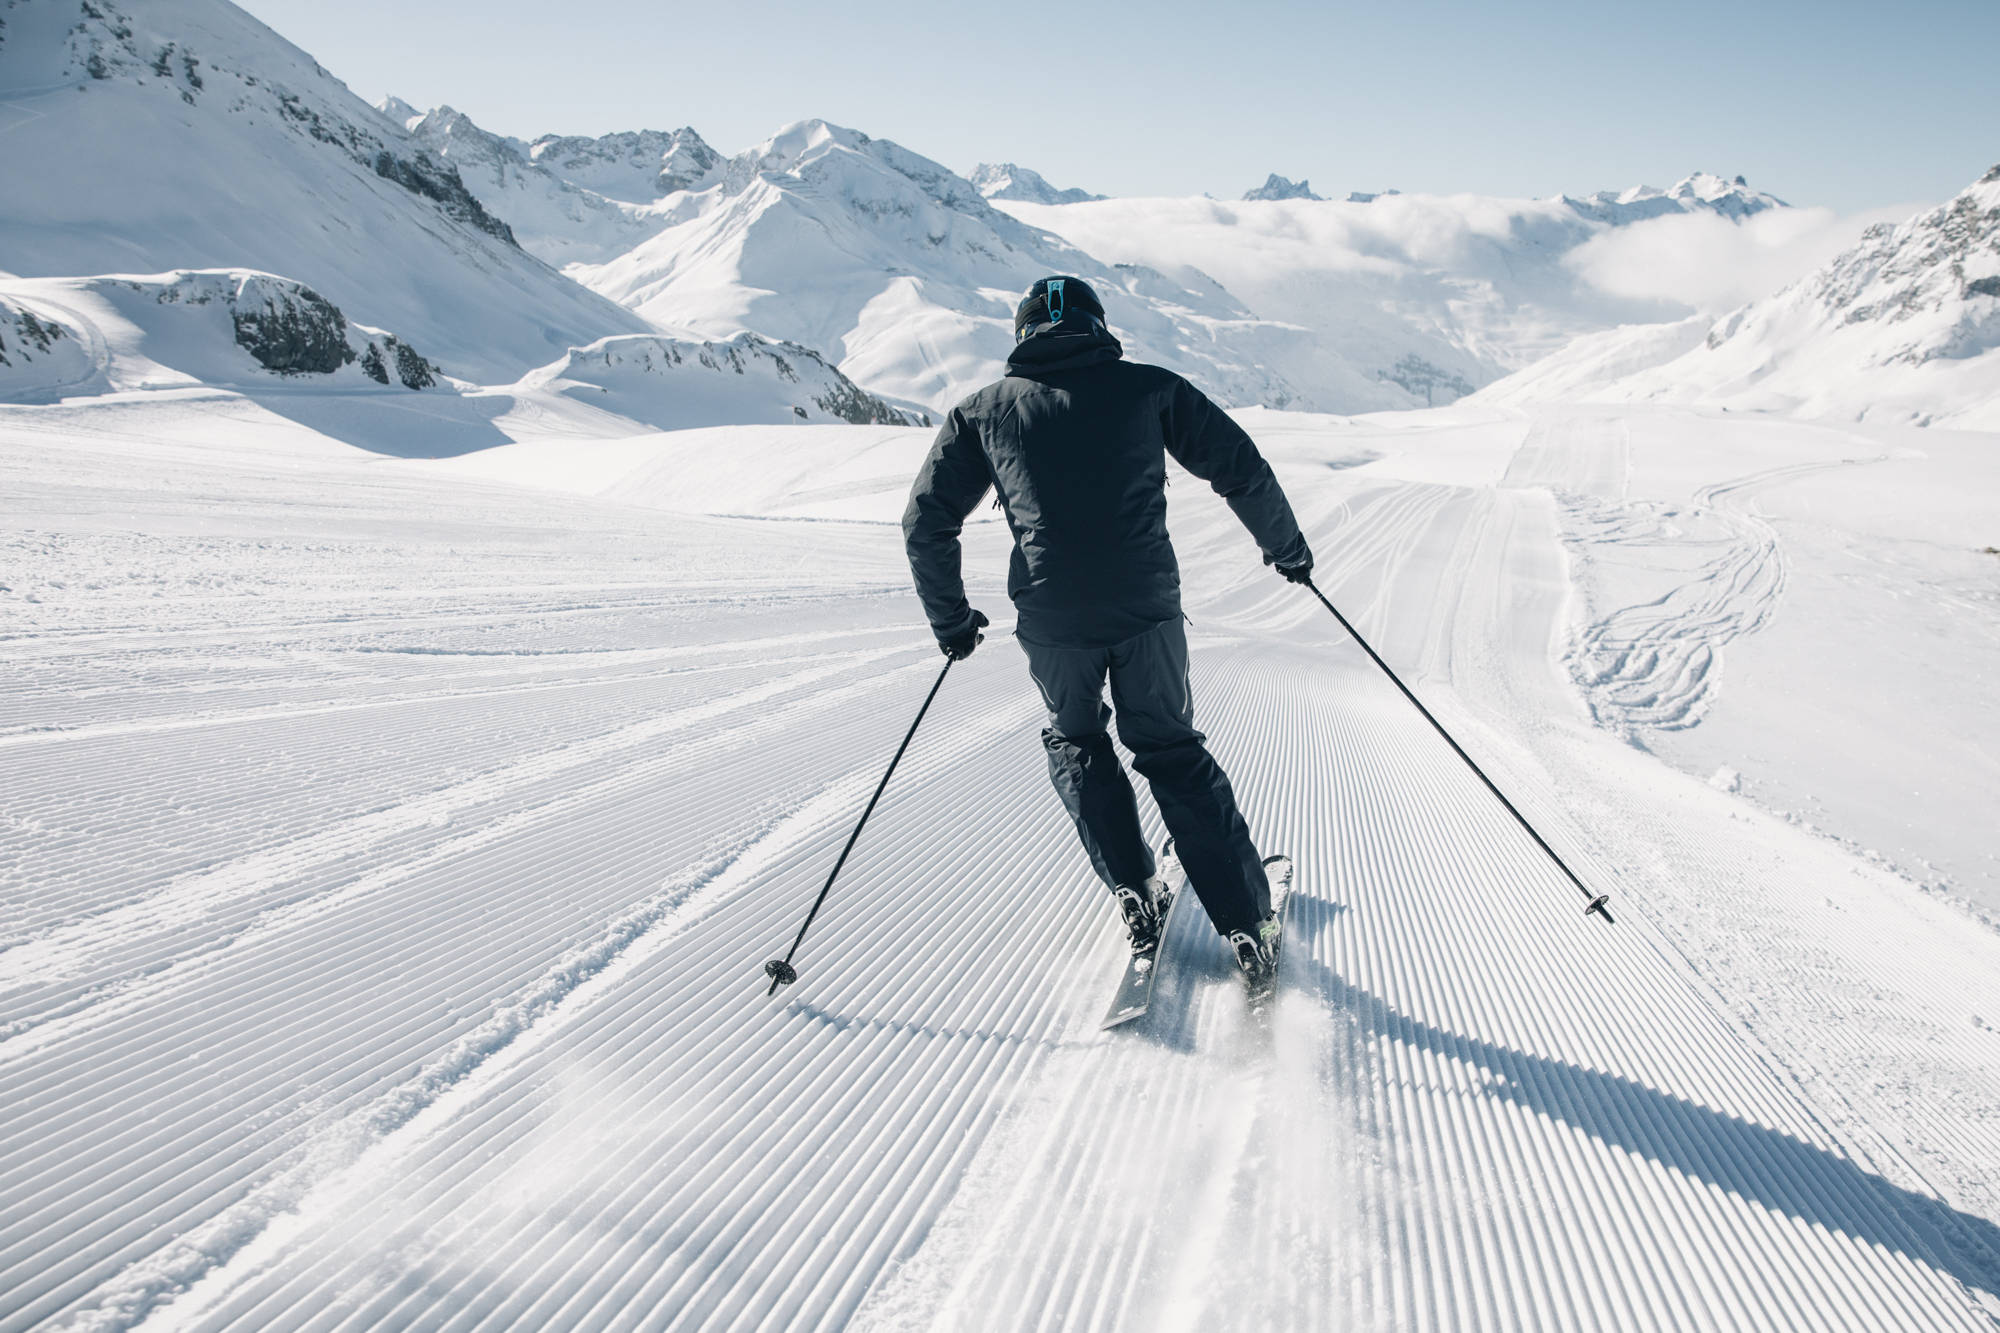 奥地利滑雪 图库摄影片. 图片 包括有 消遣, 滑雪者, 旅途, 小山, 滑雪, 峰顶, 驾空滑车, 皮斯泰 - 26721722